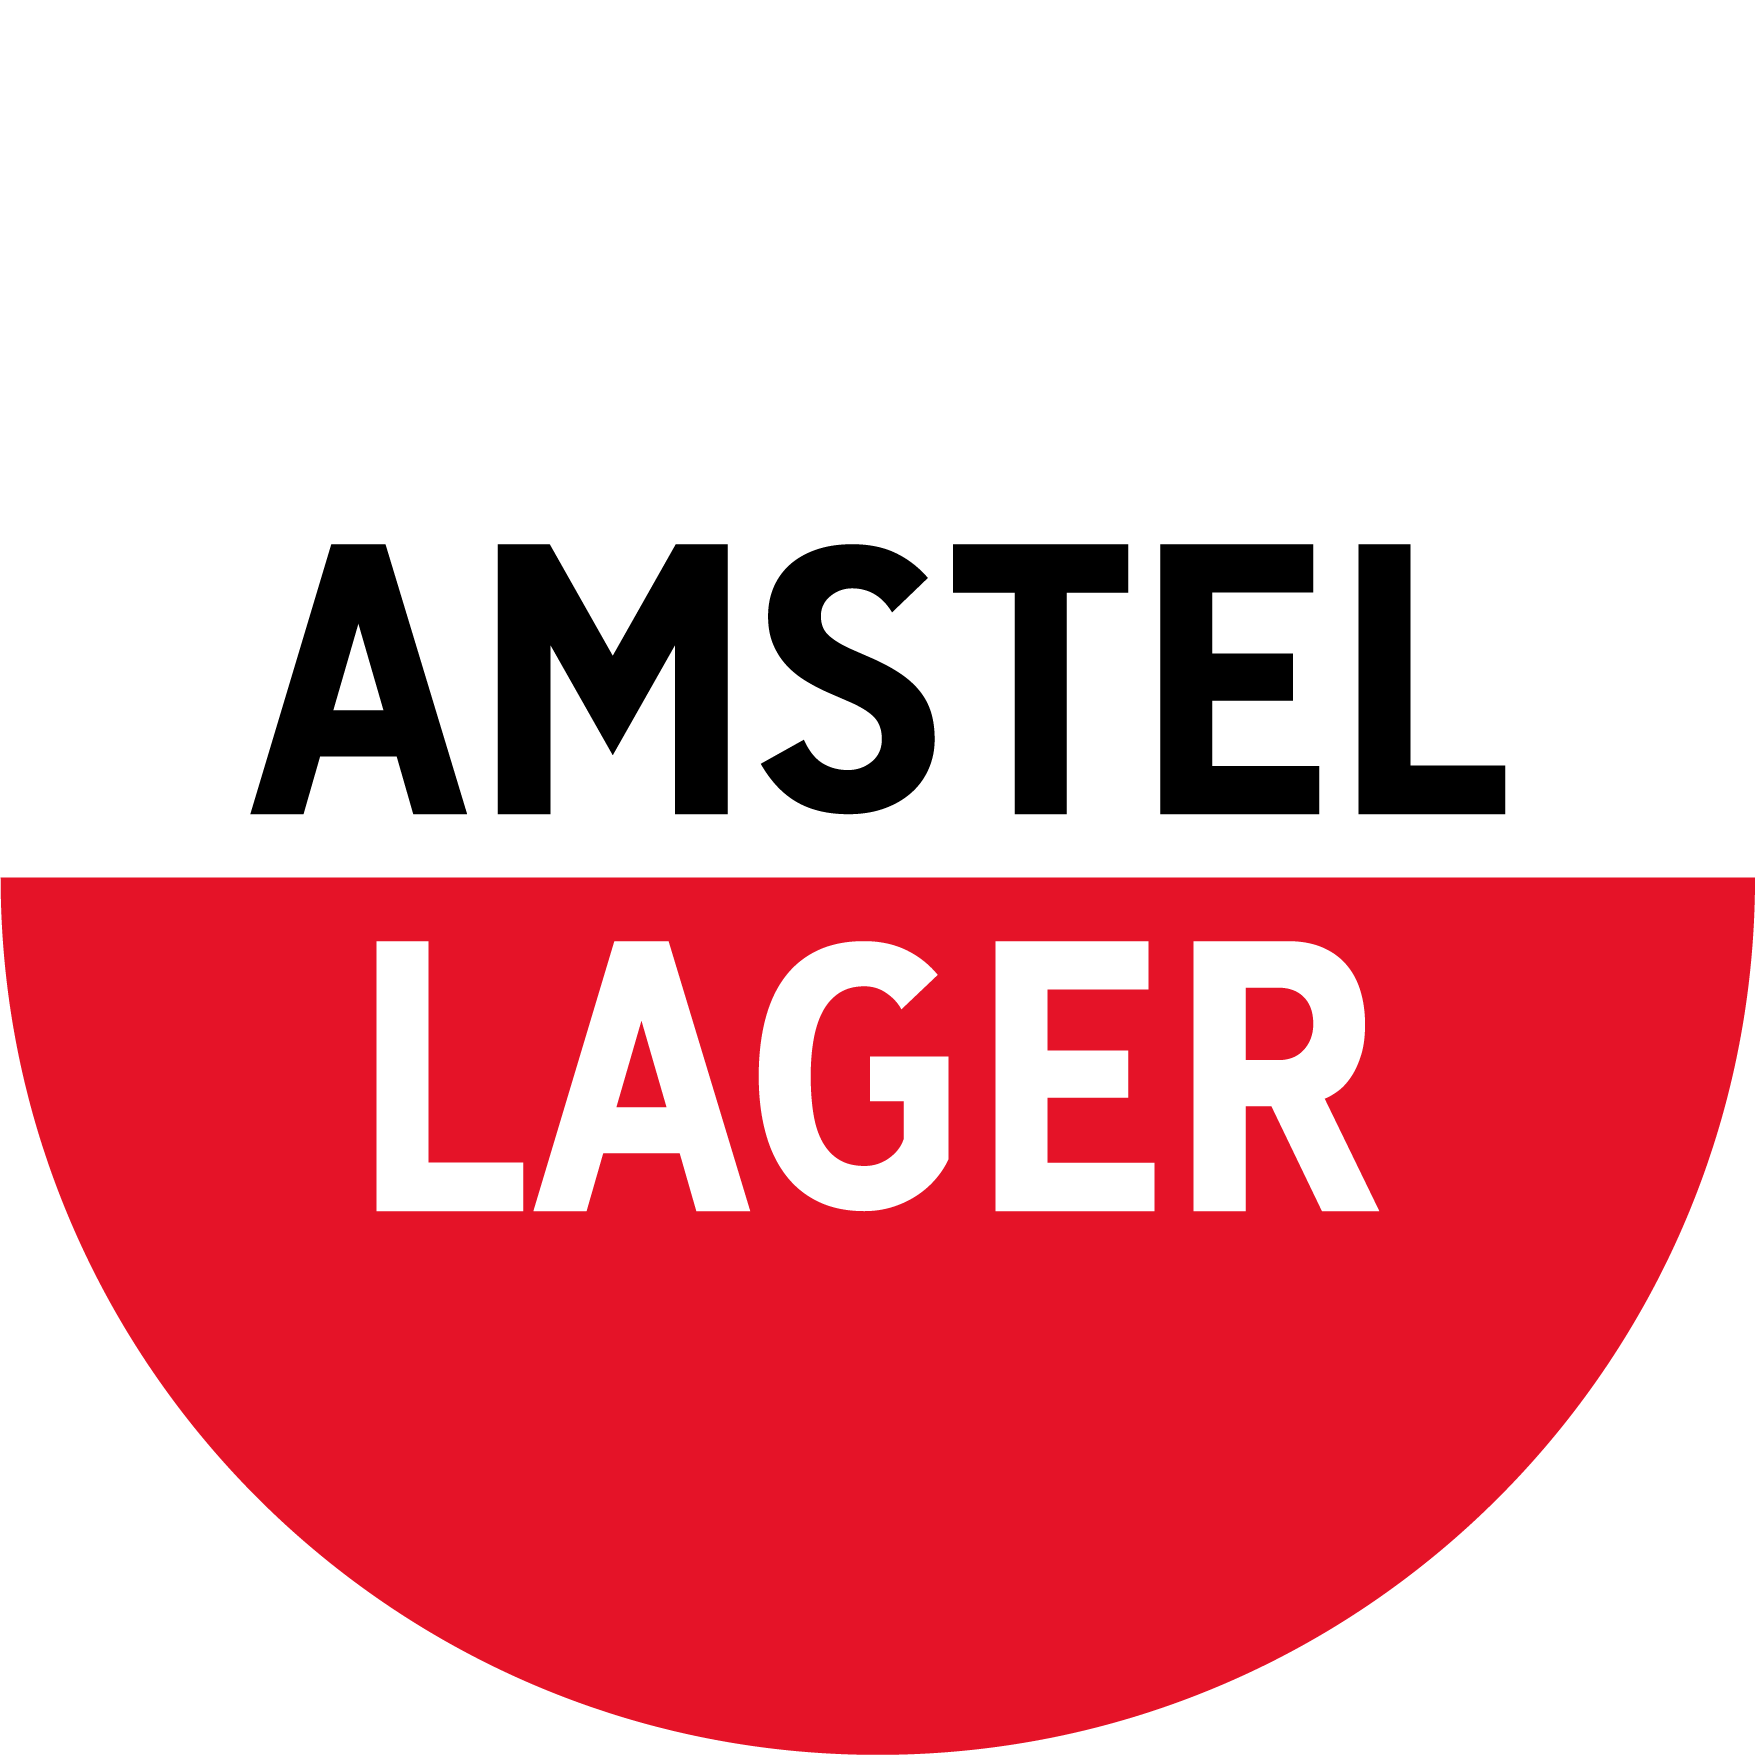 Amstel Logo - Anne van den Heuvel - Amstel Beer Label